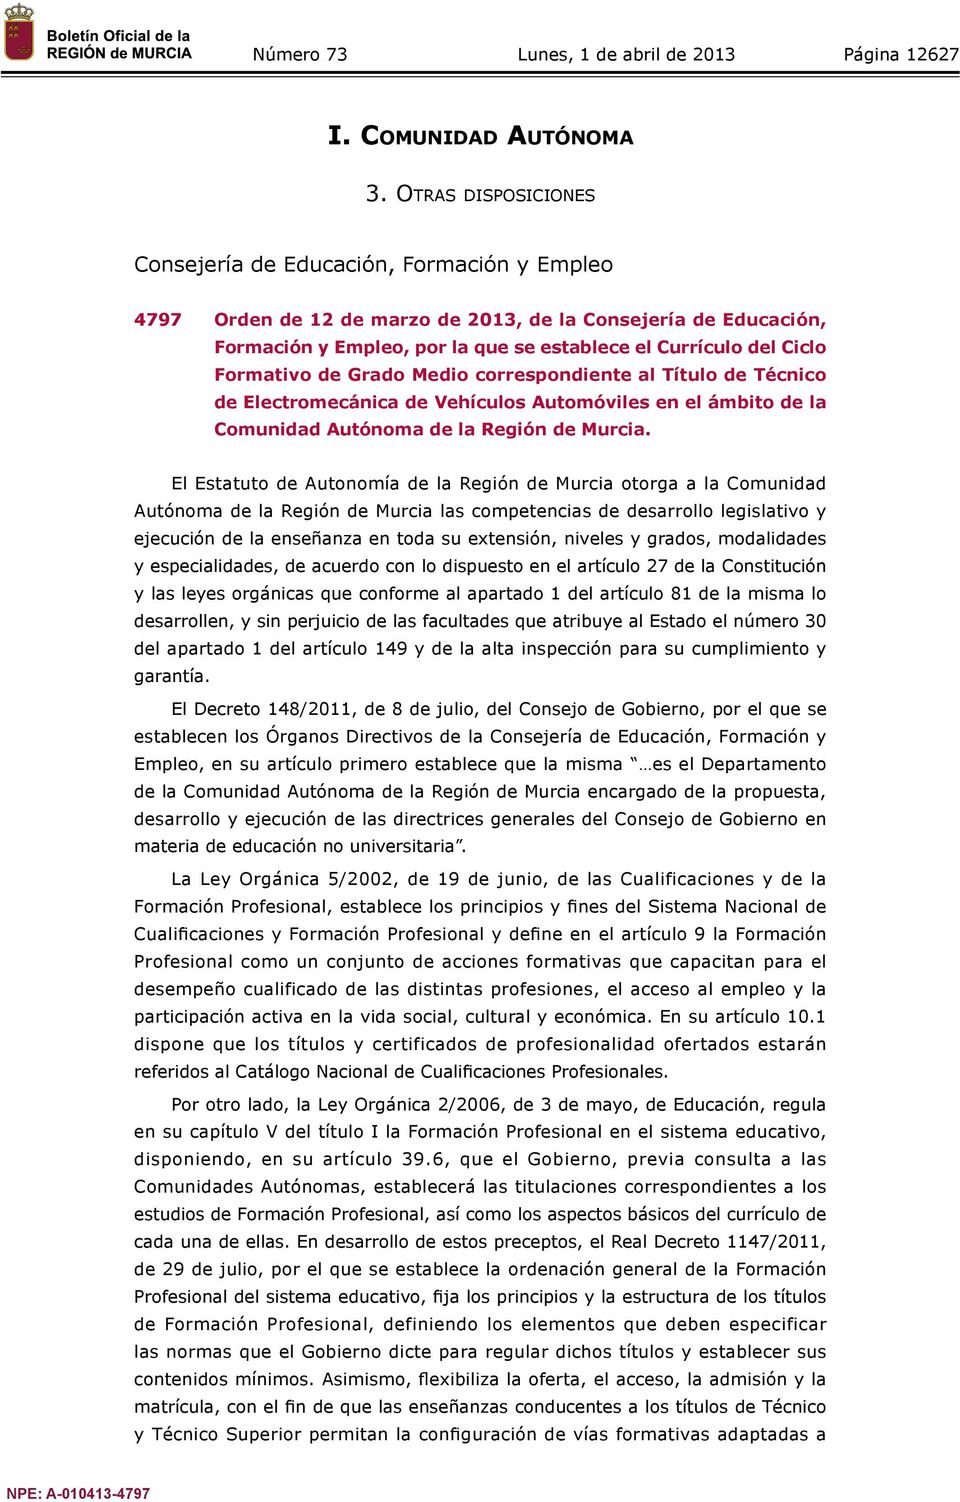 Formativo de Grado Medio correspondiente al Título de Técnico de Electromecánica de Vehículos Automóviles en el ámbito de la Comunidad Autónoma de la Región de Murcia.